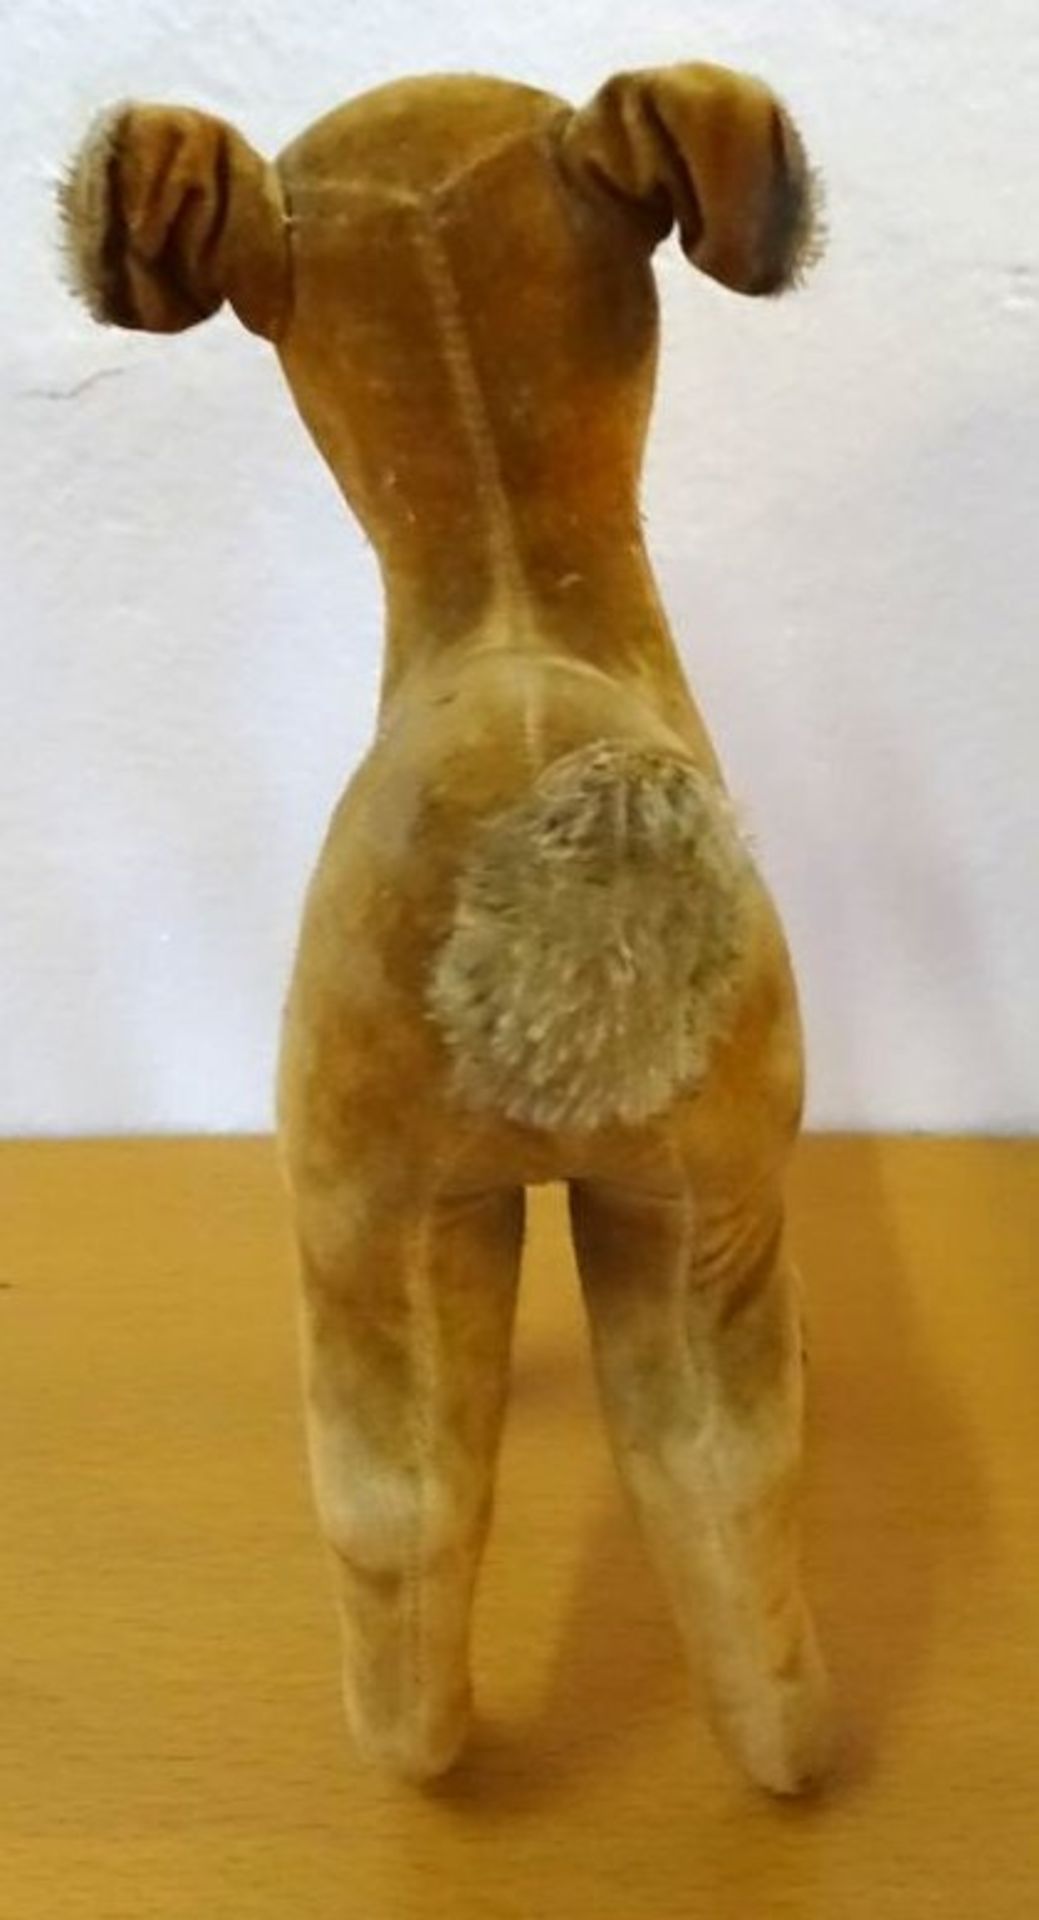 gr. Steiff Bambi, Samt, nur Knopf, H-21 cm, bespielt - Bild 4 aus 5